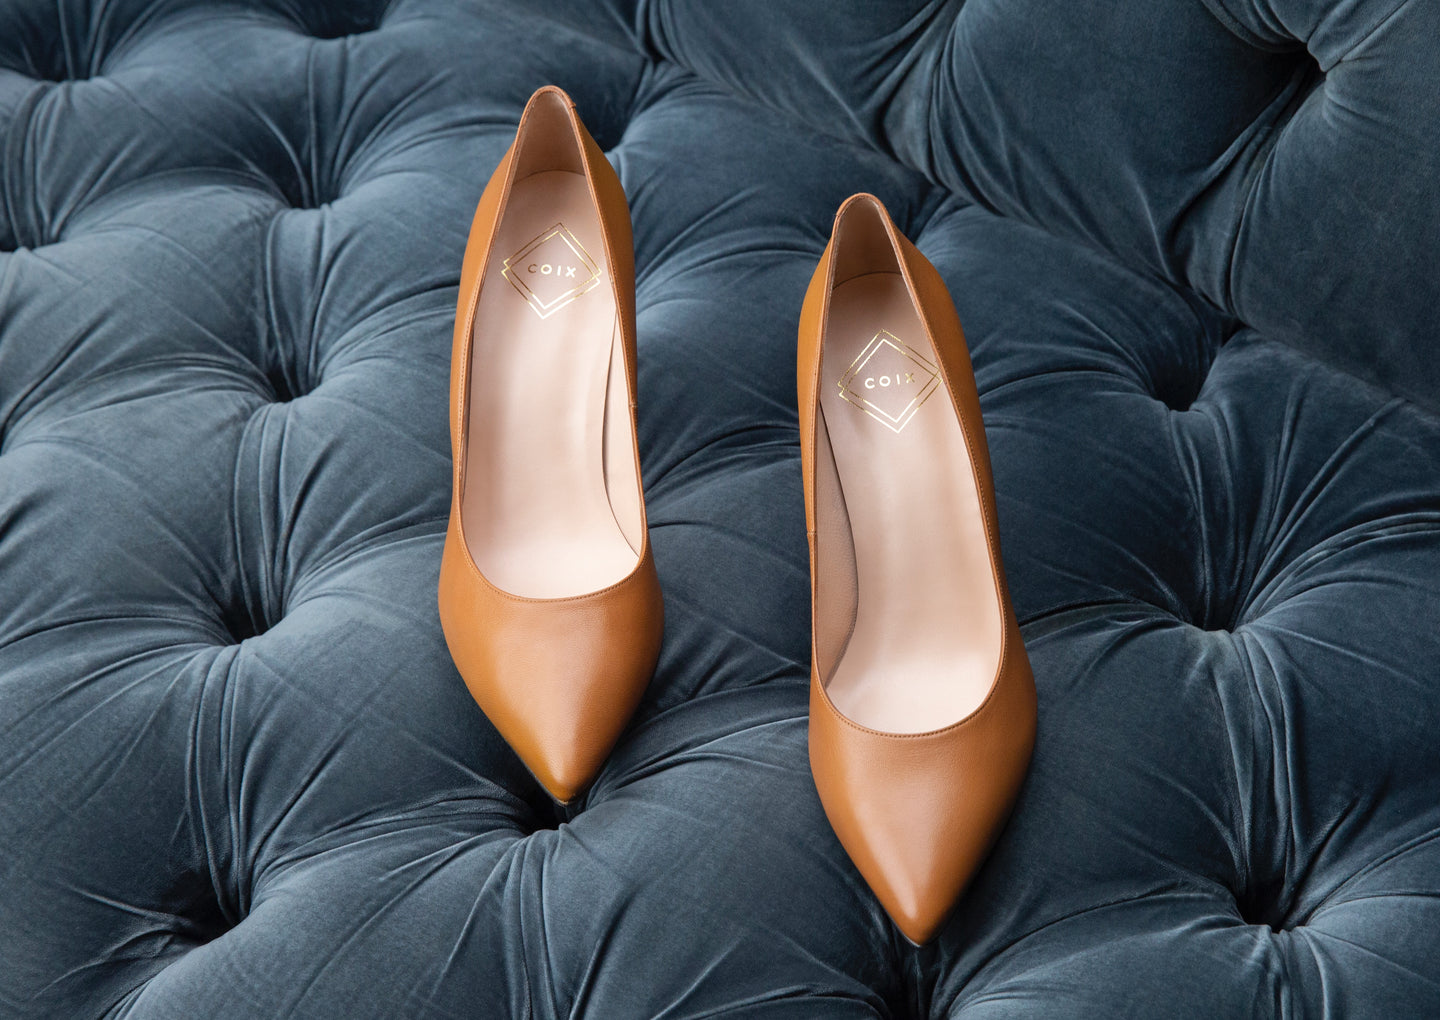 Women's Large Size Heels | CoIX Shoes Soho Stiletto Chestnut Leather | Sizes US 11, 12, 13, UK 9, 10, EU 44, 45, 46